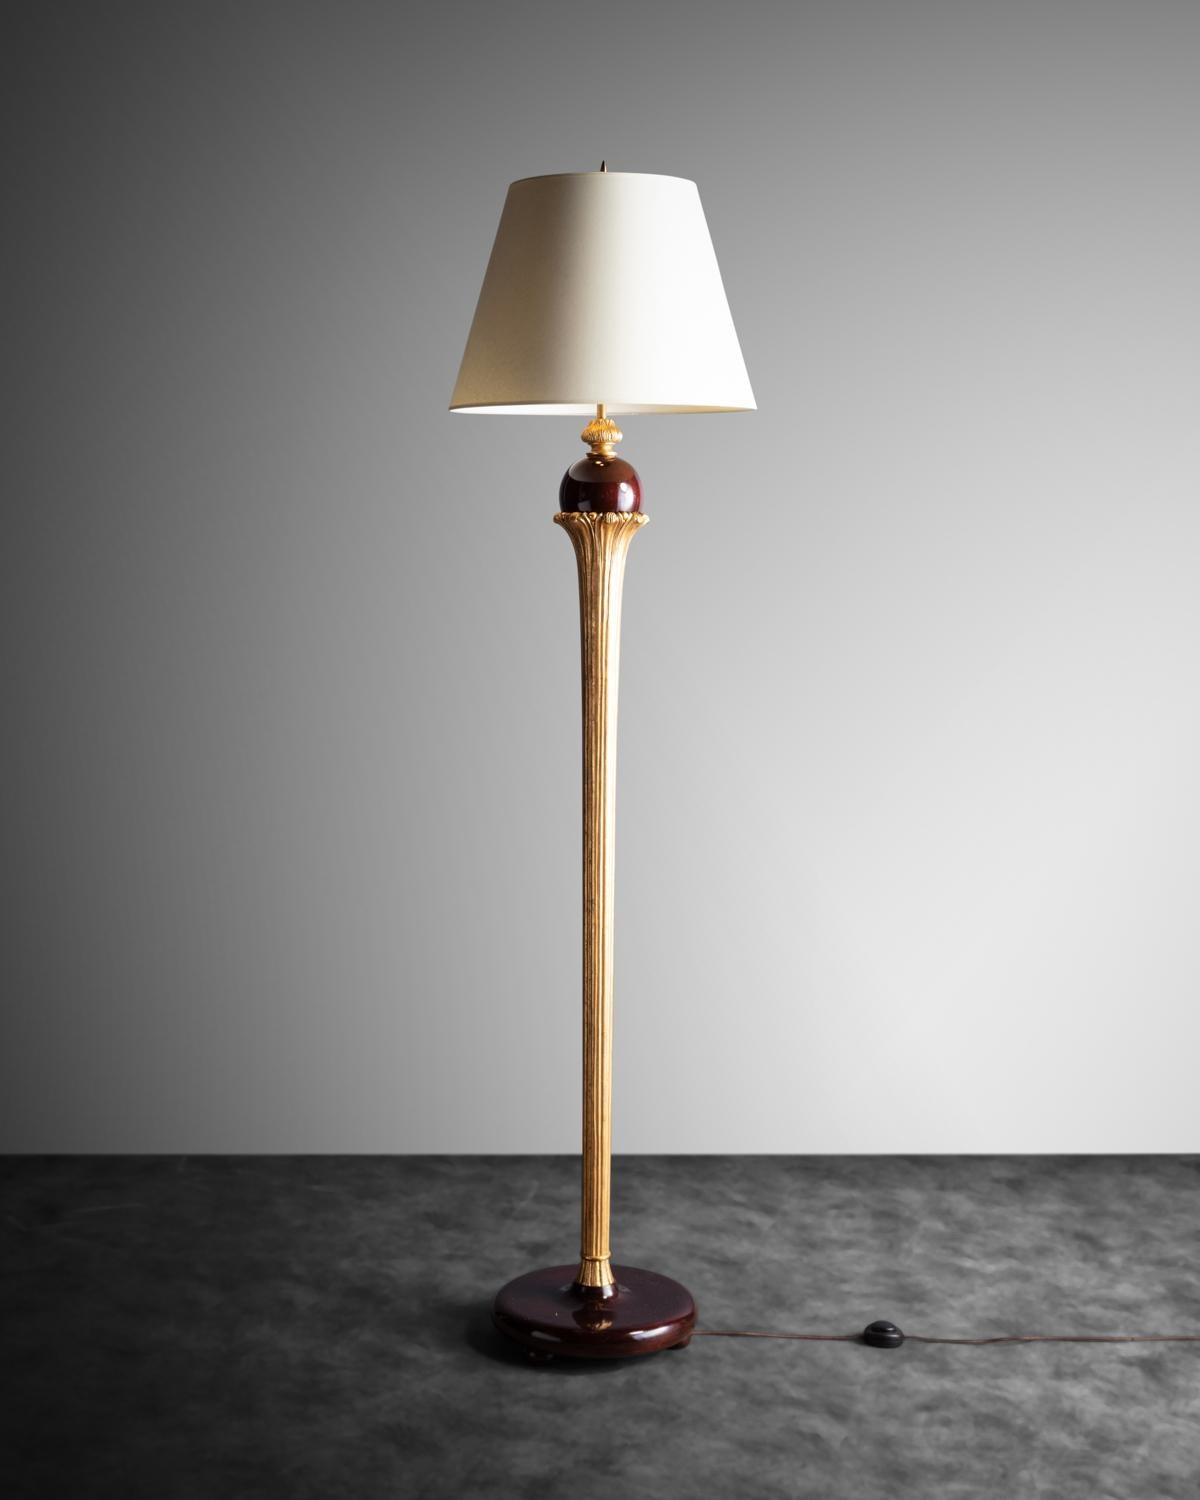 Klassische Art-Déco-Lampe mit einem Sockel aus poliertem Mahagoni und einer identisch bearbeiteten Holzkugel, die von einem geschnitzten und vergoldeten Holzstiel mit floralen Schnitzereien gehalten wird.

(Lampenschirm nicht enthalten)